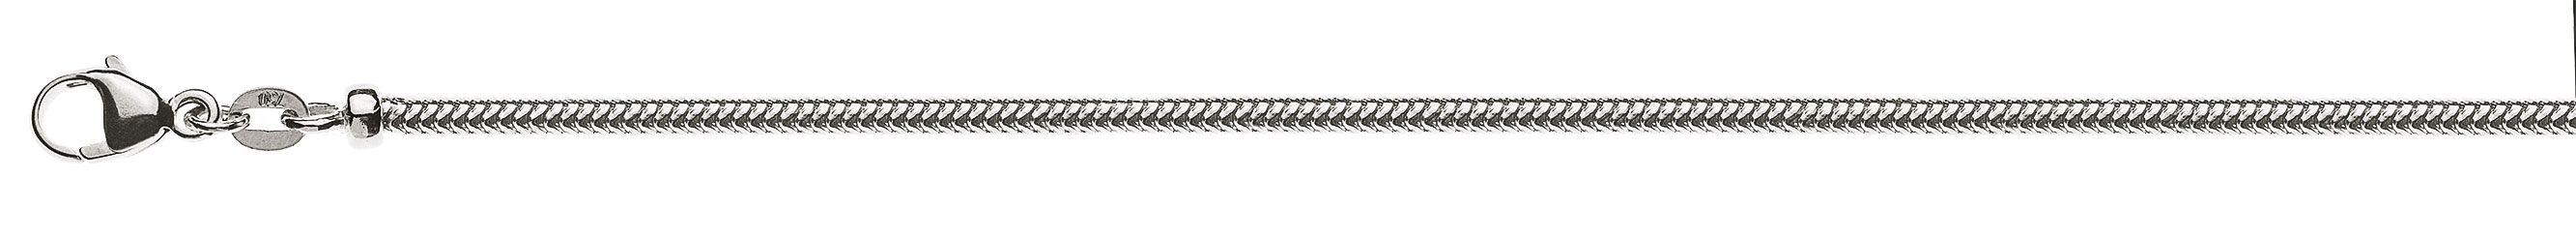 AURONOS Prestige Halskette Weissgold 18K Schlangenkette 50cm 2.4mm